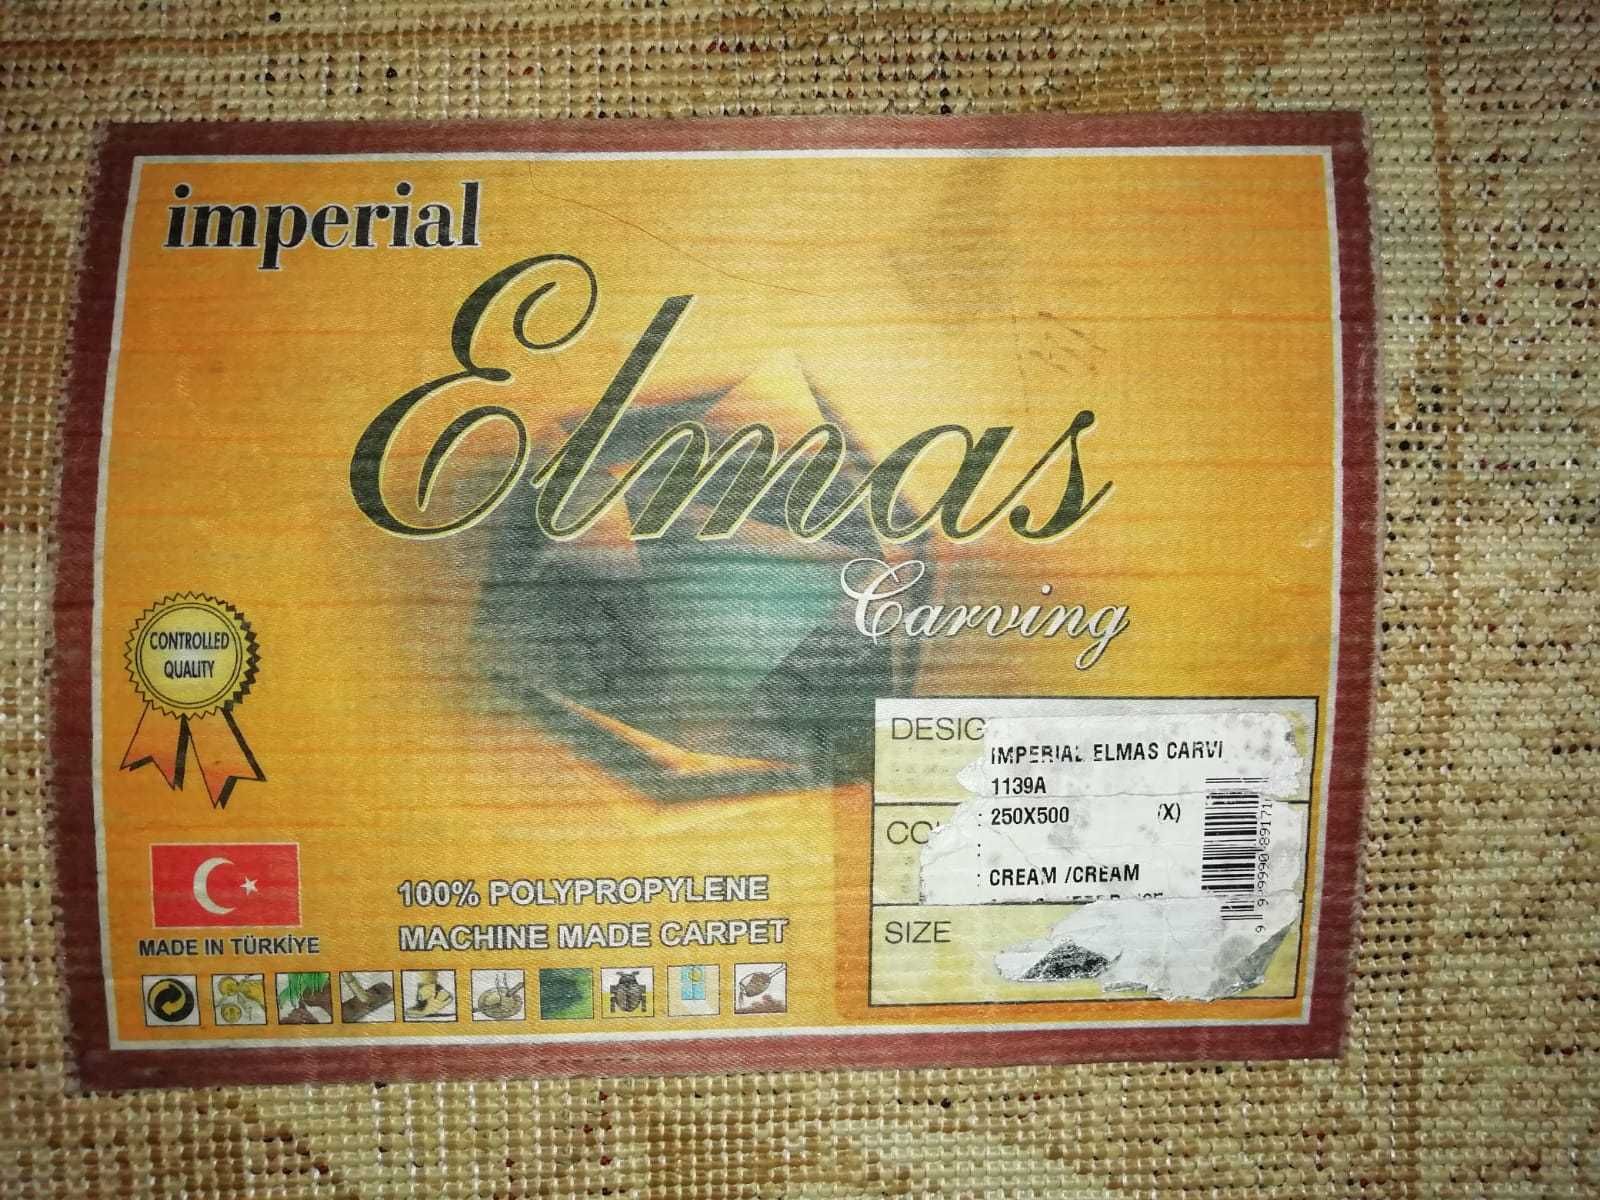 Продам Турецкий ковер, размер 2,5 х 5,0 м, б/у в отличном состоянии